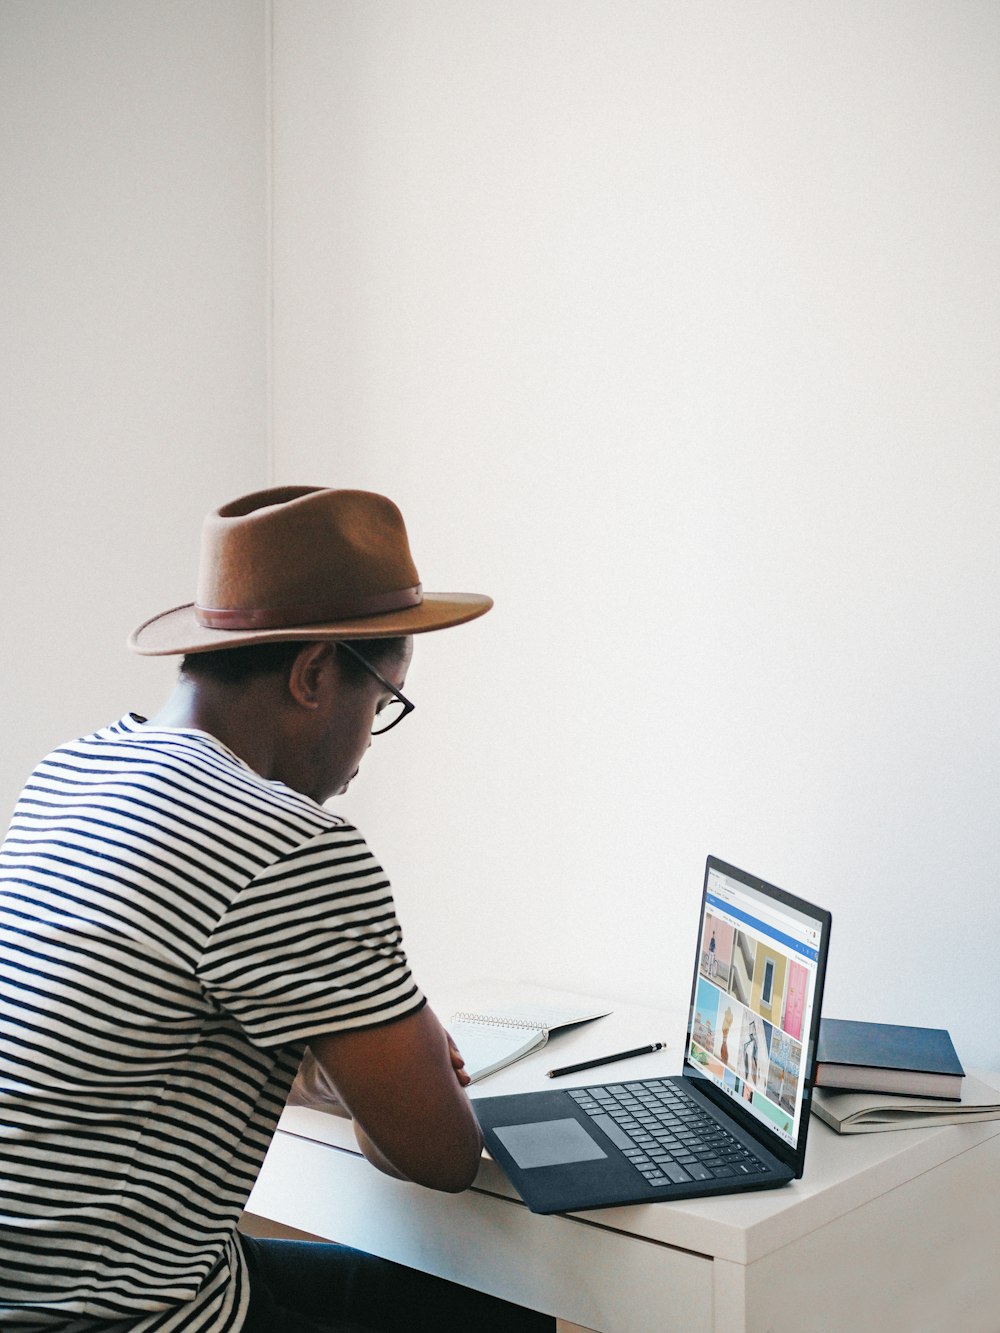 uomo in camicia a strisce bianche e nere che indossa un cappello marrone seduto sulla sedia usando un computer portatile al cobalto di superficie Microsoft 